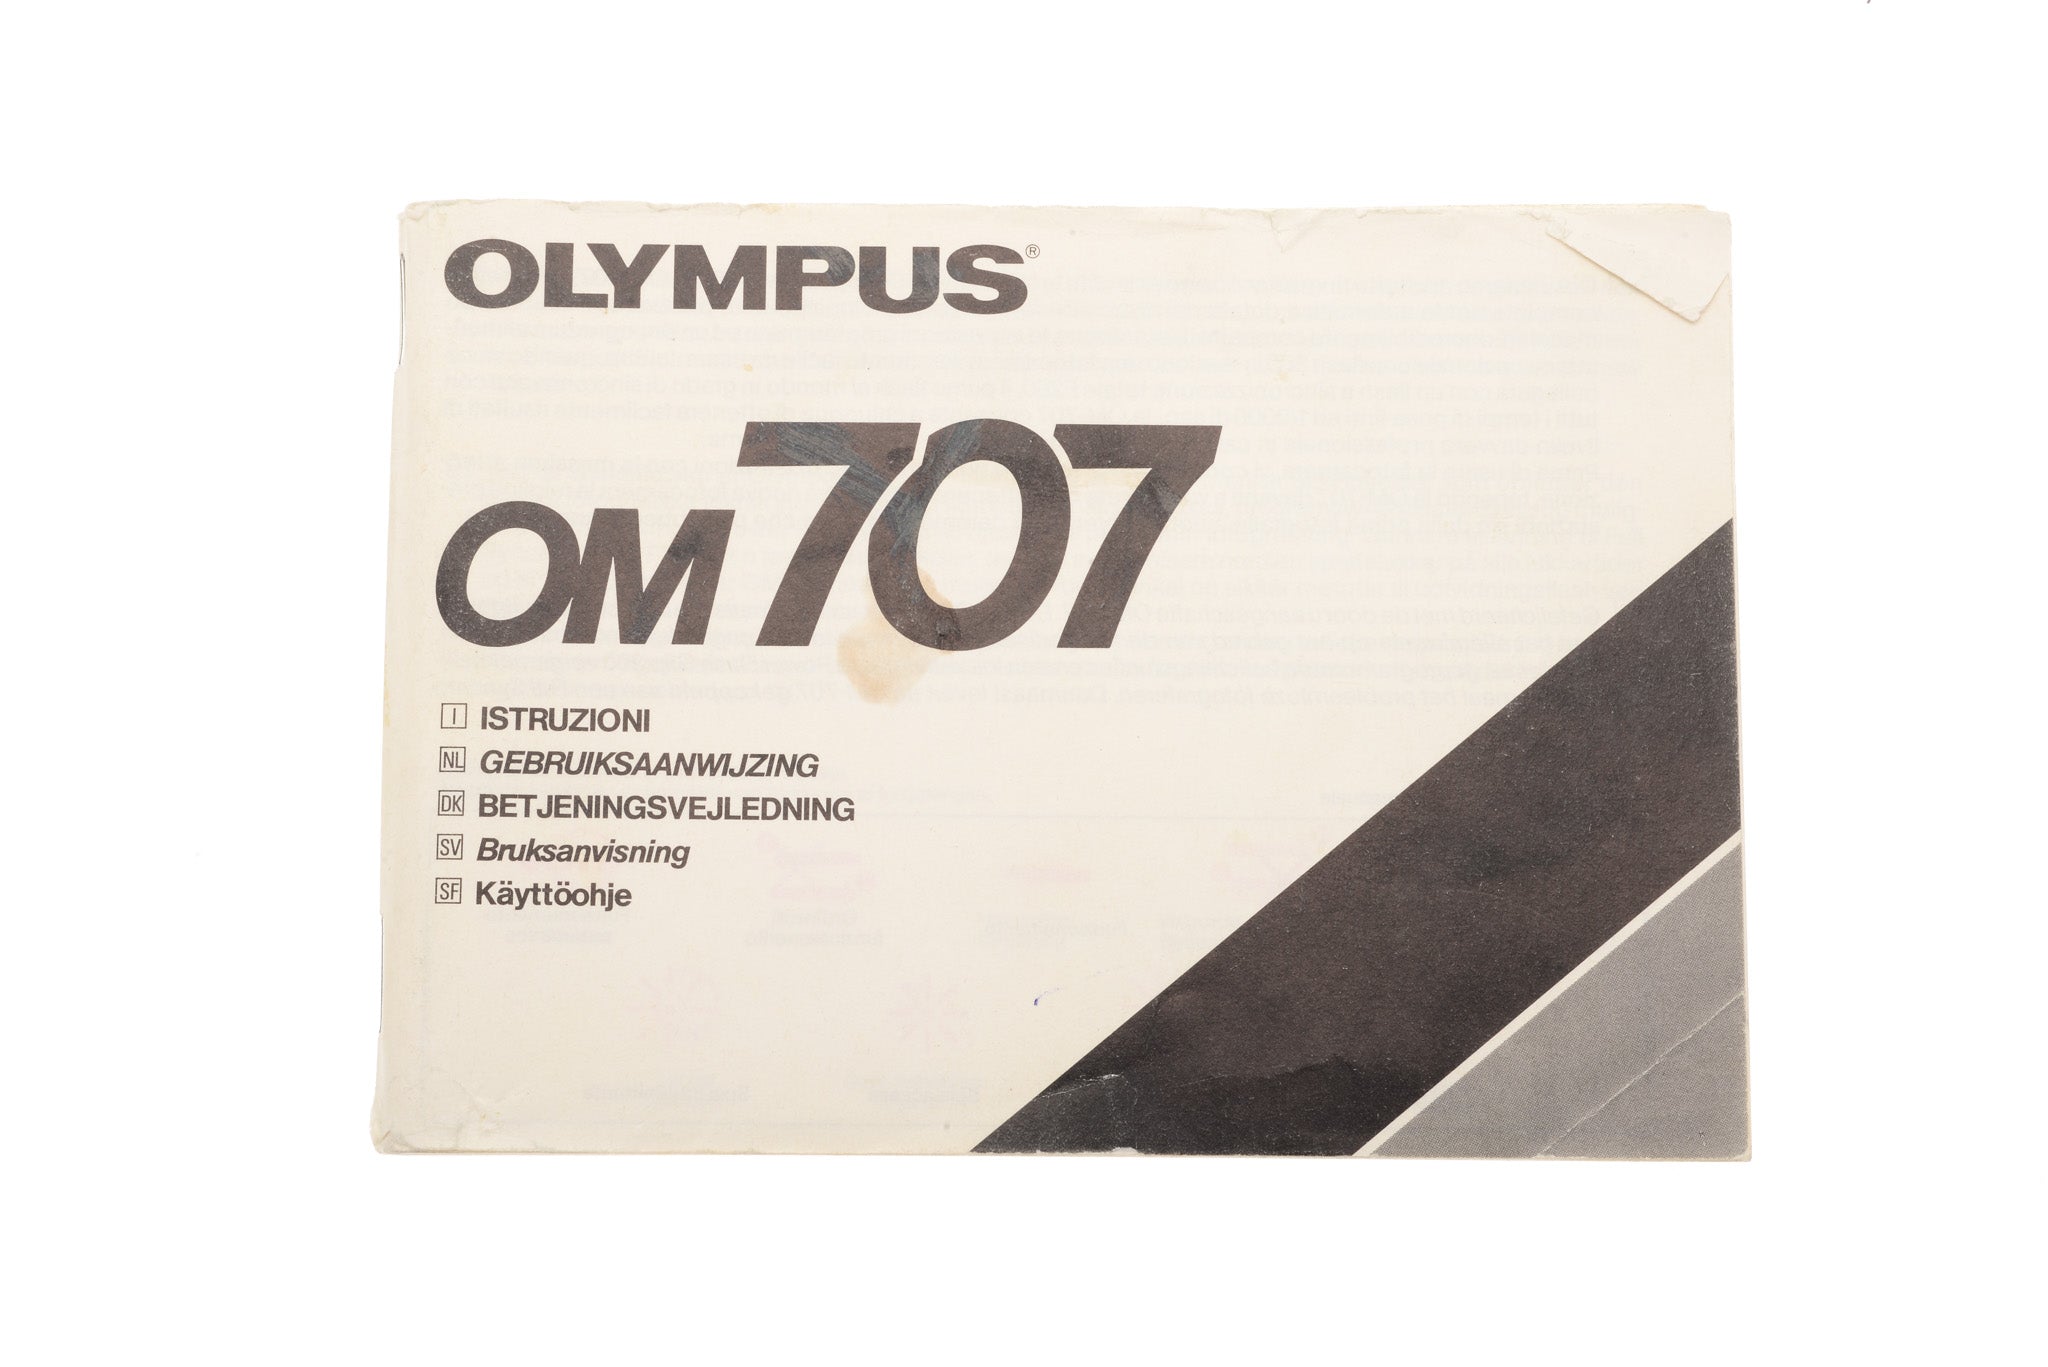 Olympus OM707 Instructions – Kamerastore